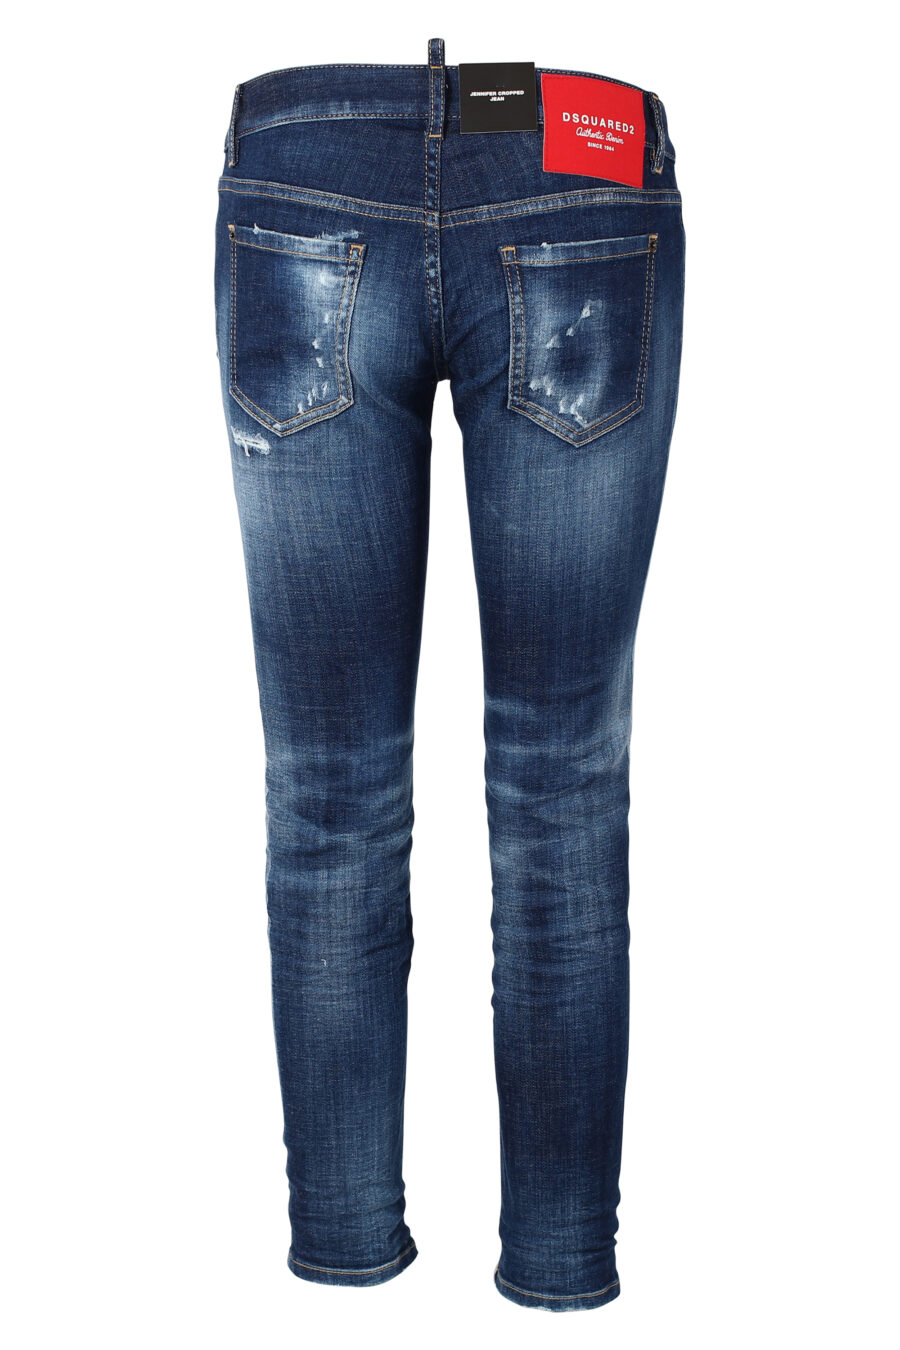 Pantalón vaquero azul "jennifer cropped jean" con semirotos - IMG 9862